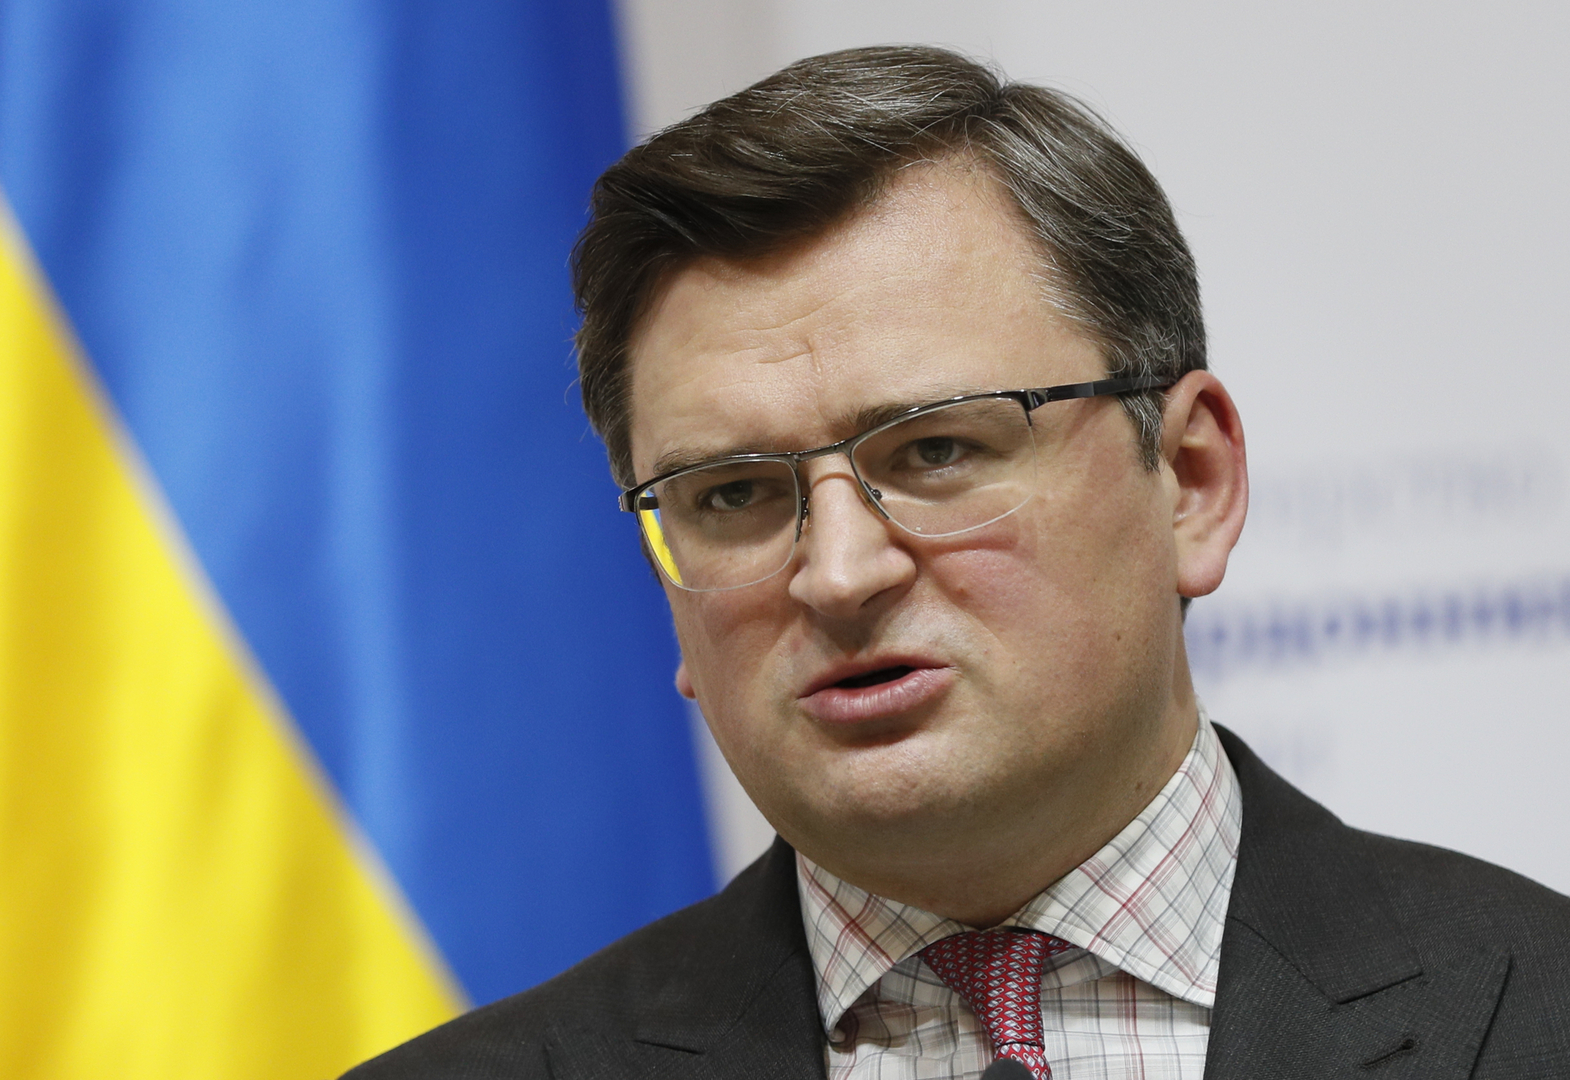 وزير الخارجية الأوكراني دميتري كوليبا